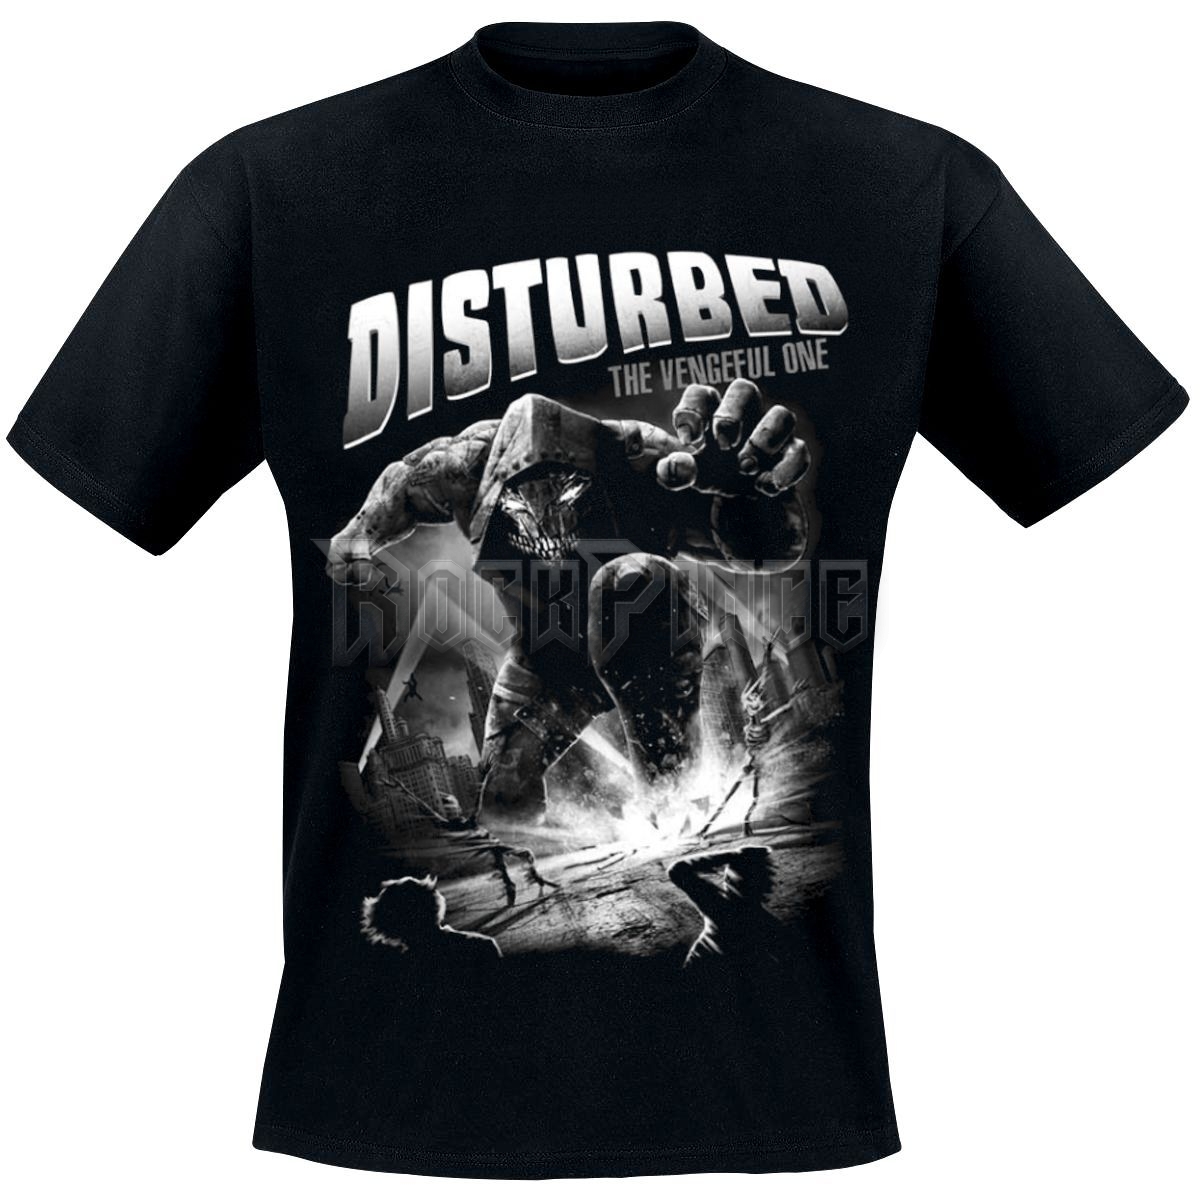 Disturbed - The Vengeful One - 1481 - UNISEX PÓLÓ